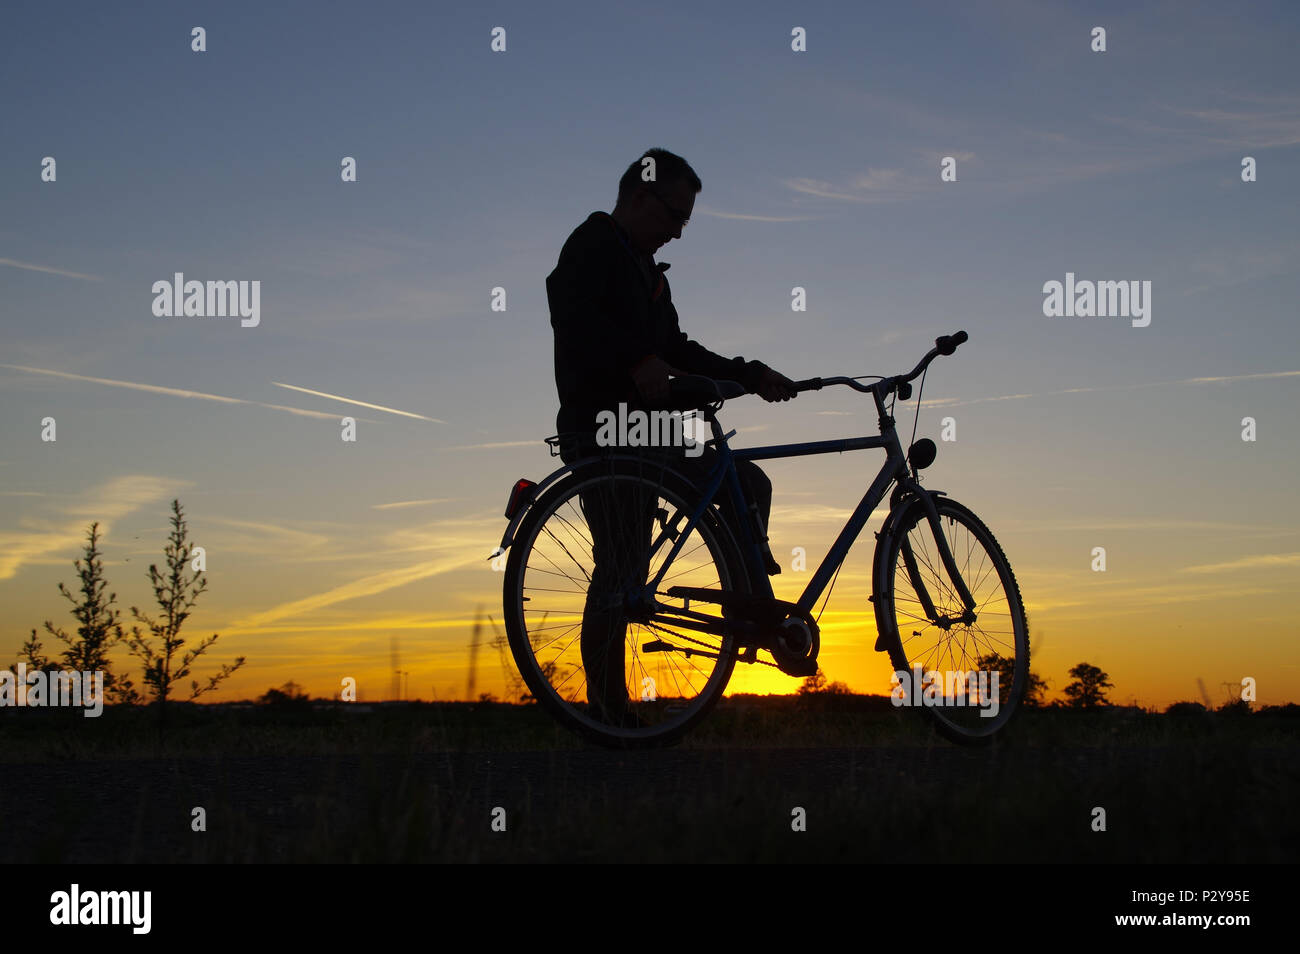 L'uomo corsa sulla bicicletta. Rider silhouette sulla bici retrò con Cielo di tramonto in background. Sana ricreazione e attività. Foto Stock